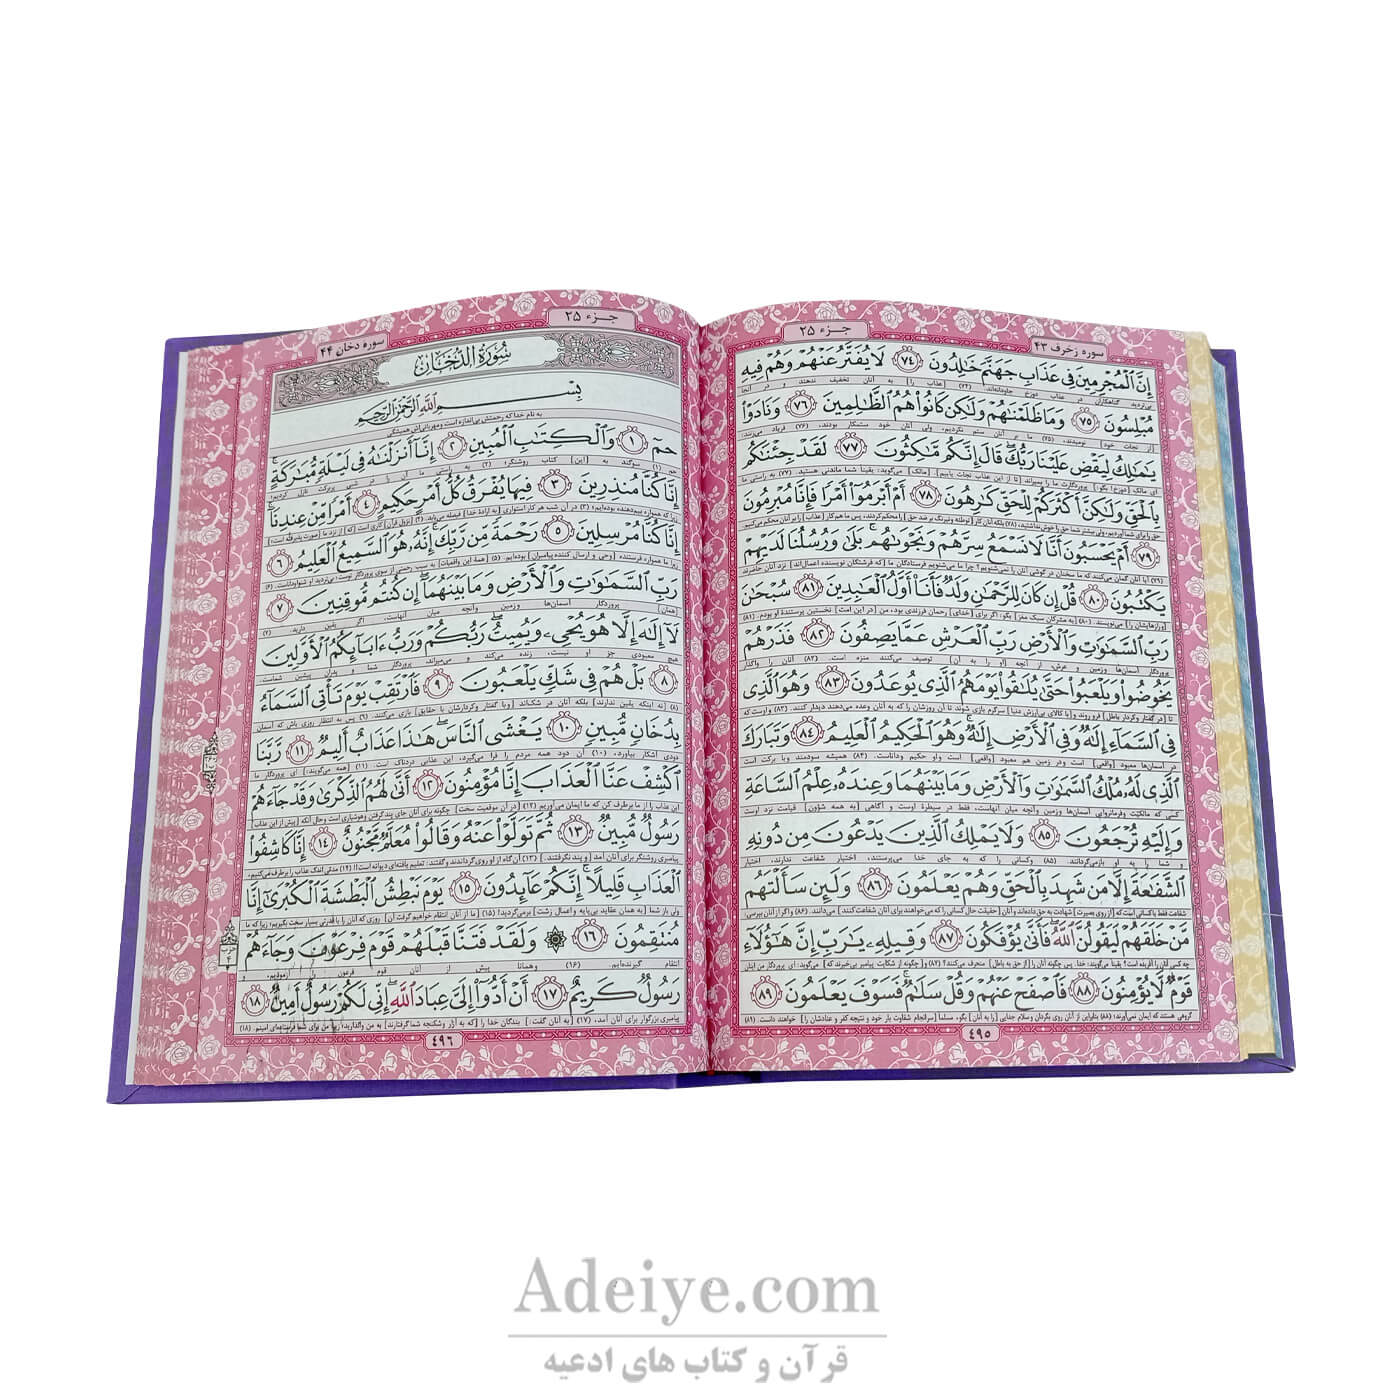 کتاب قرآن (وزیری، گالینگور، عثمان طه)-عکس متن